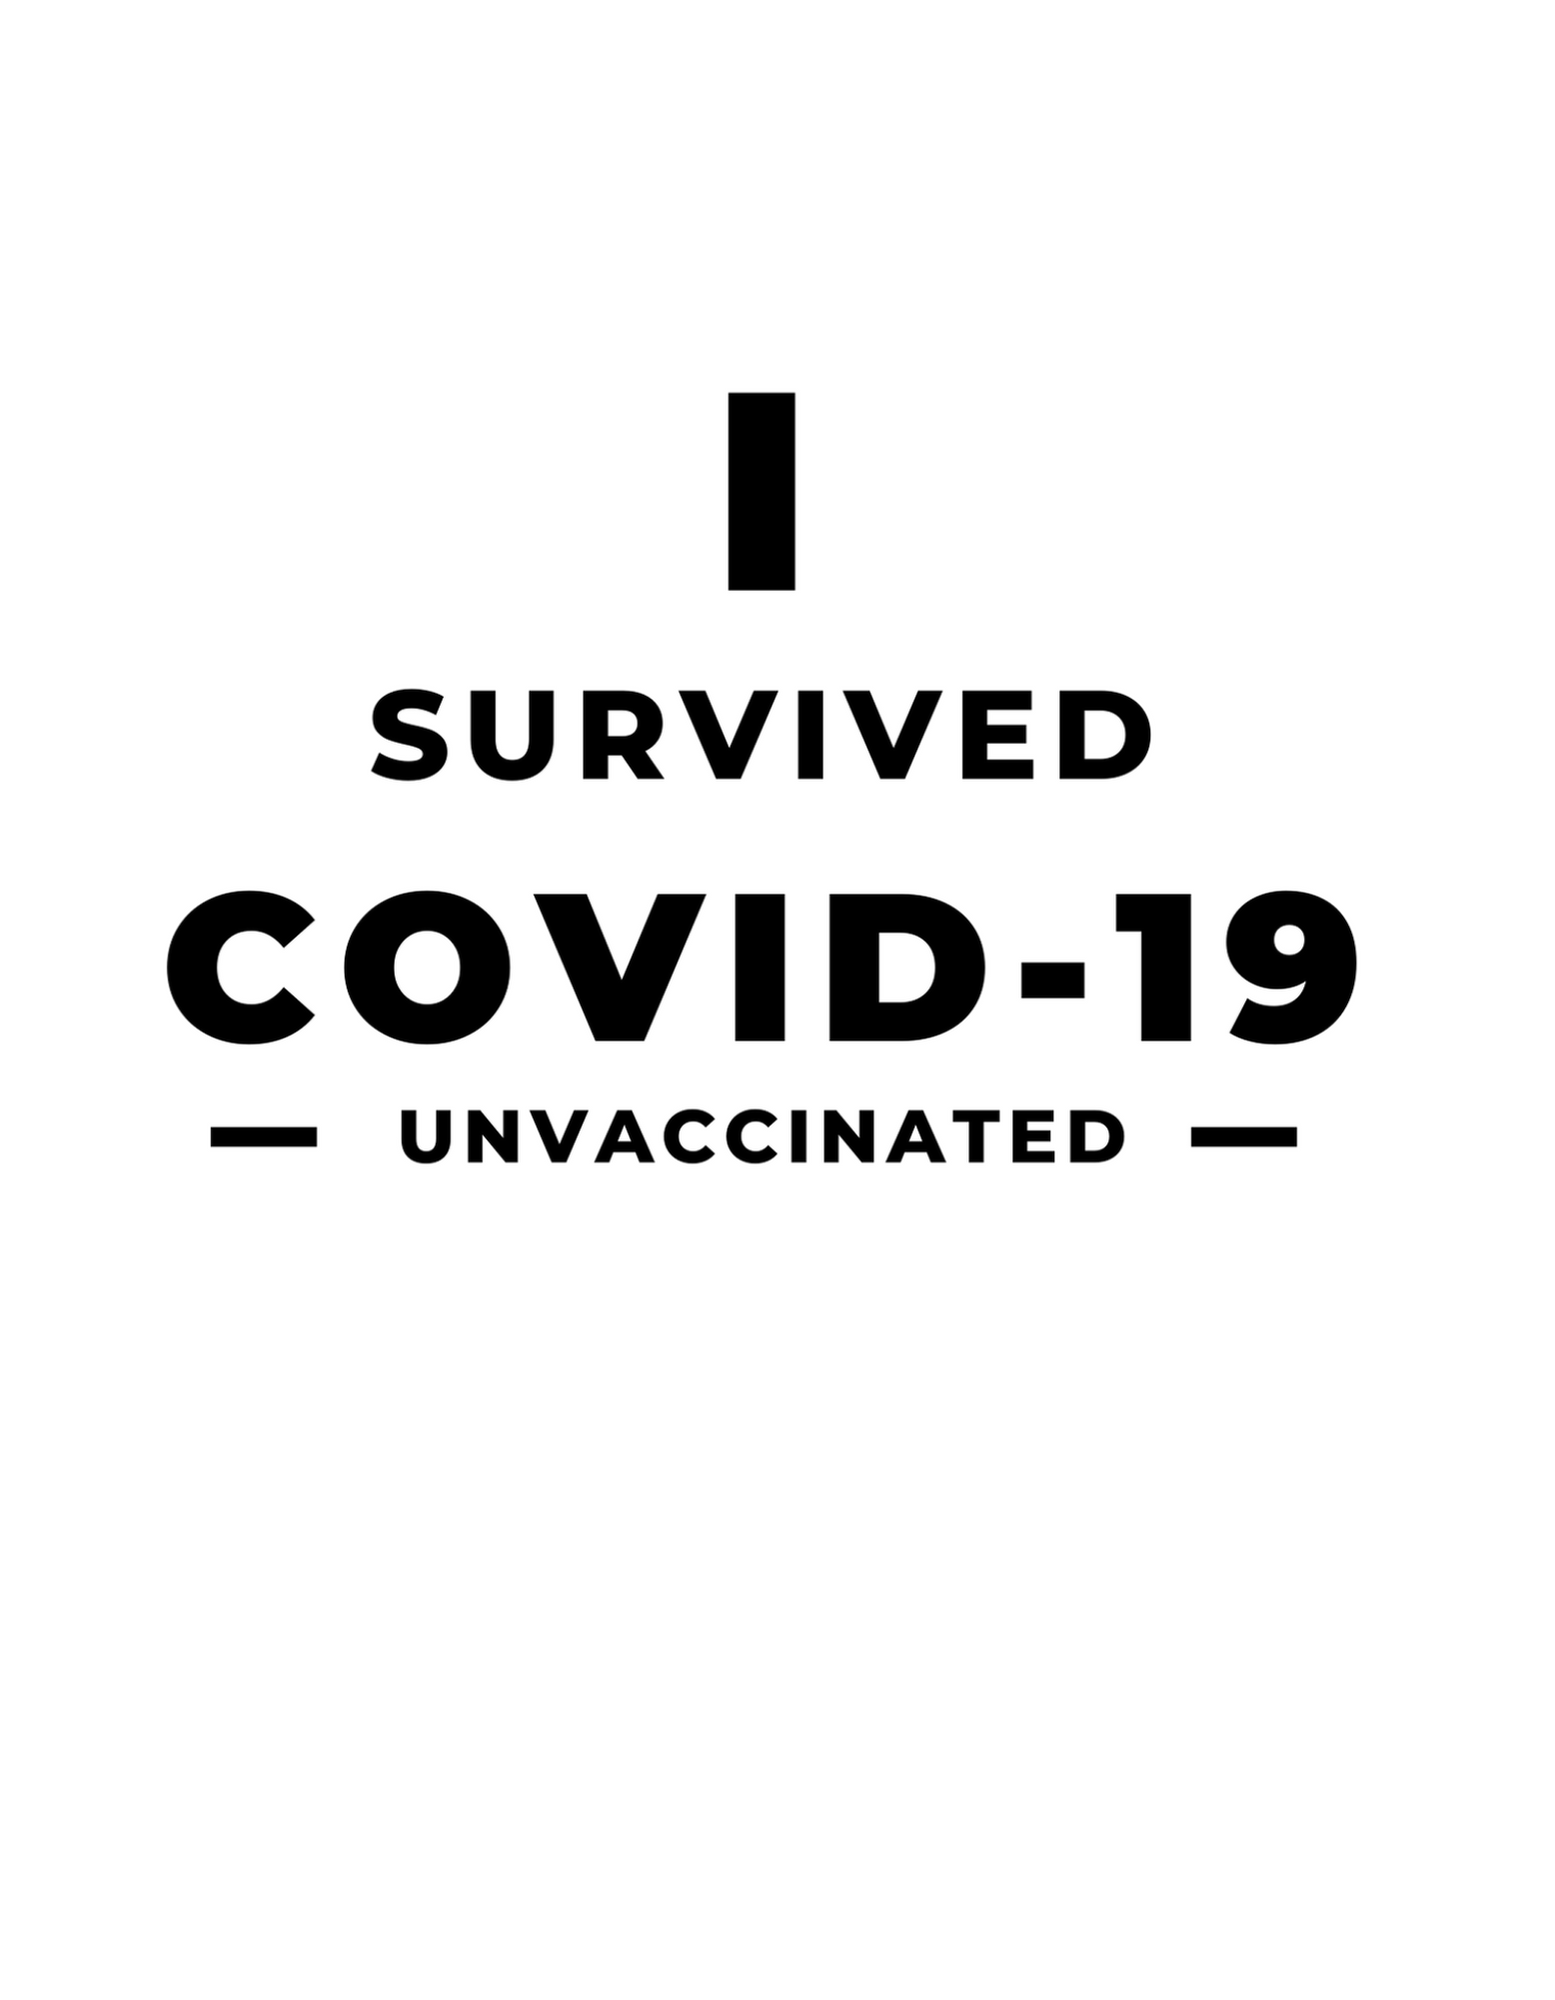 In Survid Covid-19 Sticker